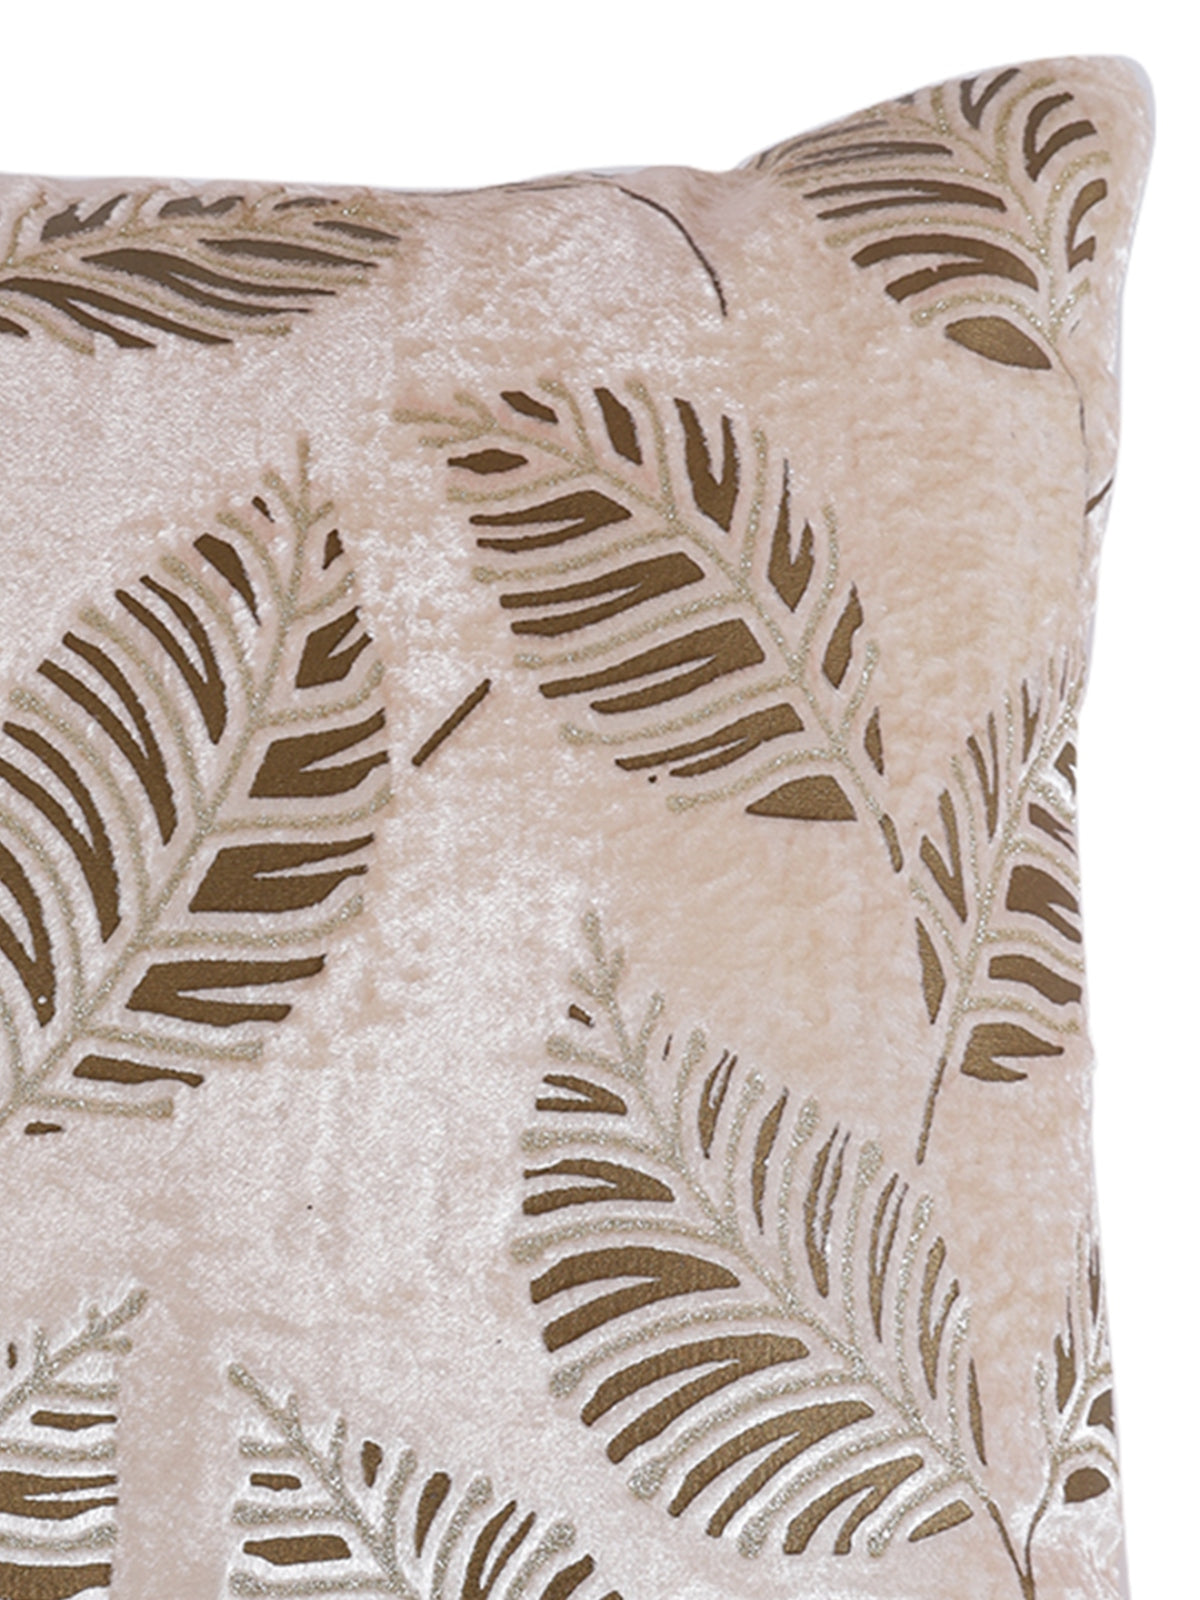 Velvet Leaf Designer Cushion Cover 16x16 Inche, Set of 5 - White